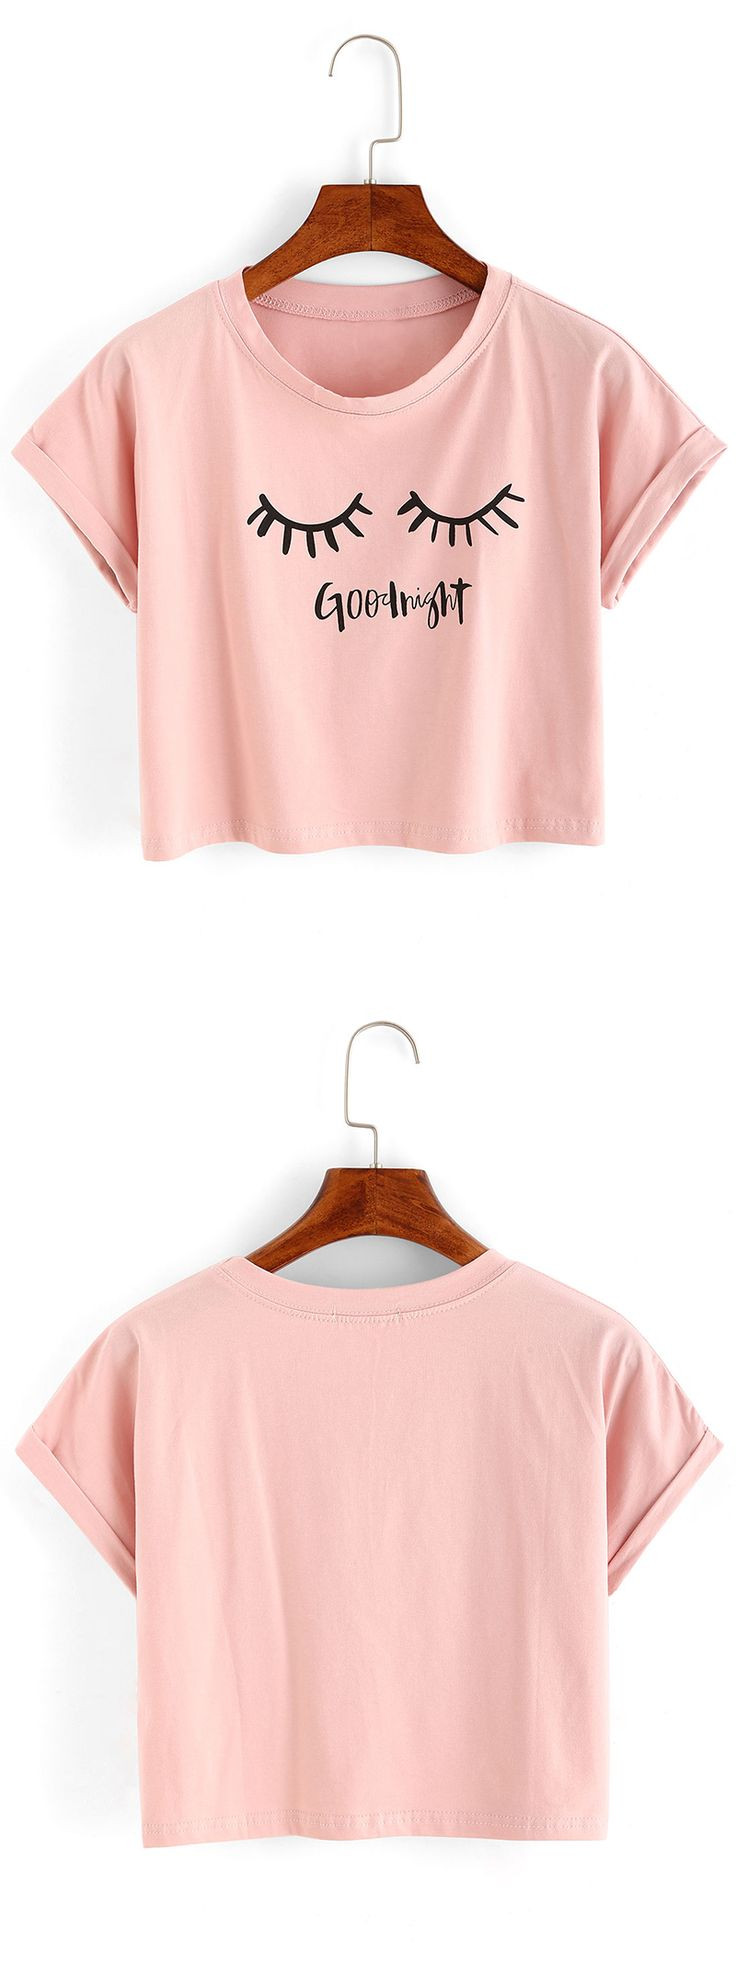 Summer Shirt Ideas
 Pink Summer Shirts